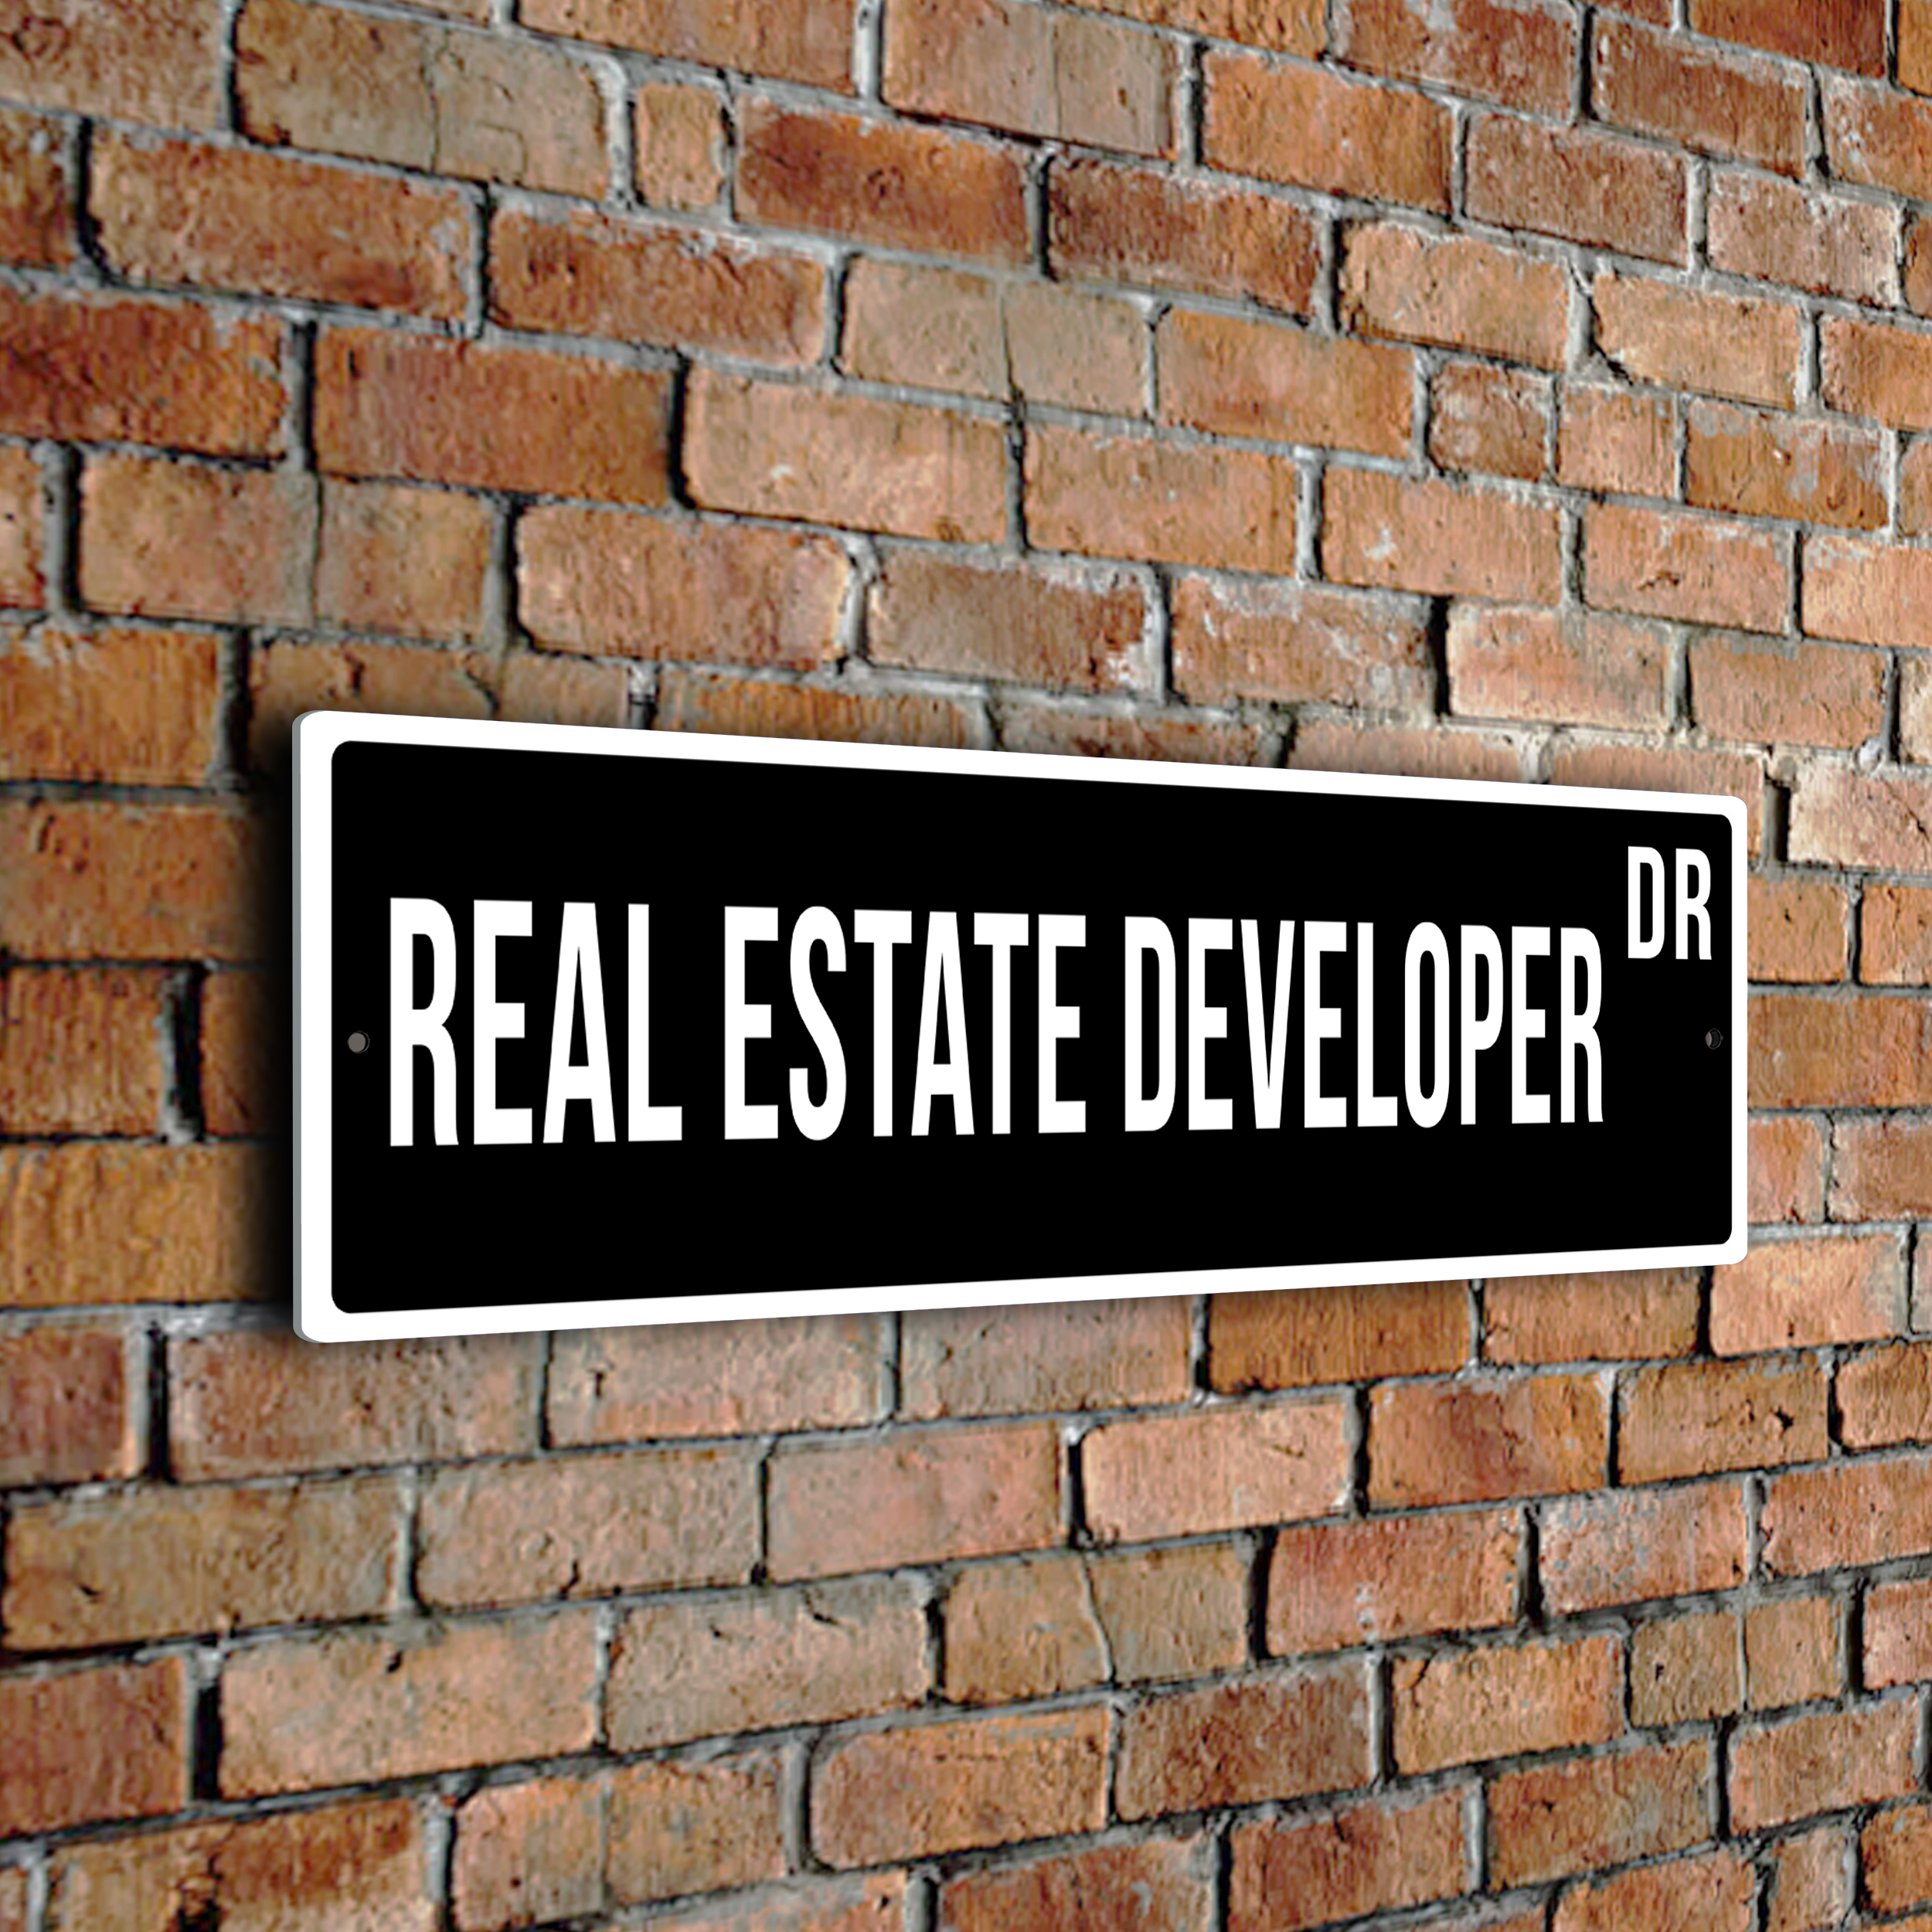 Real Estate Developer street sign